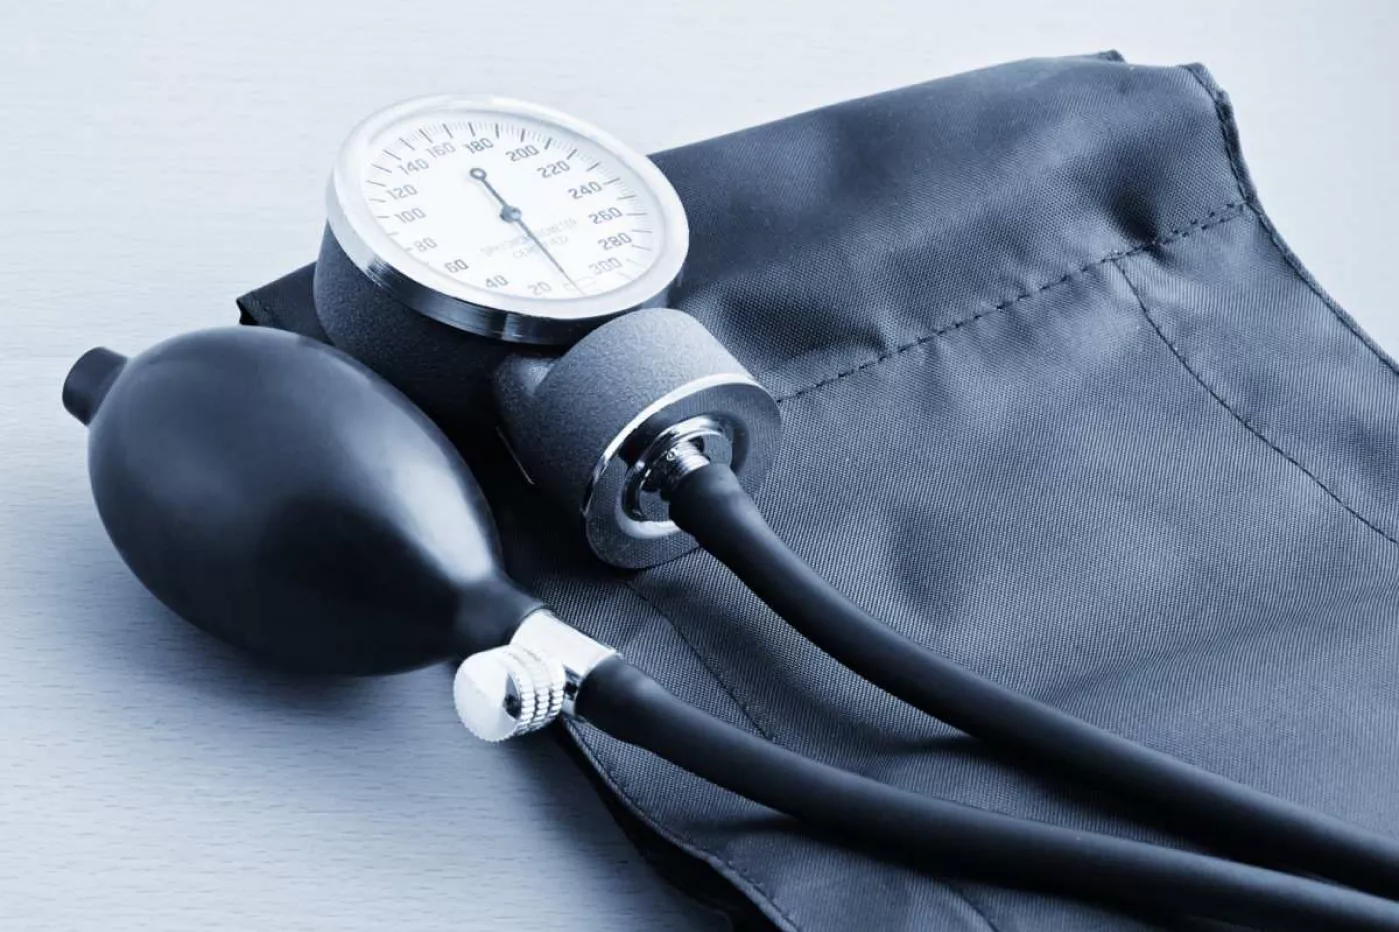 La guía busca garantizar que la toma de presión y el seguimiento de la hipertensión se hacen correctamente y de manera homogénea.